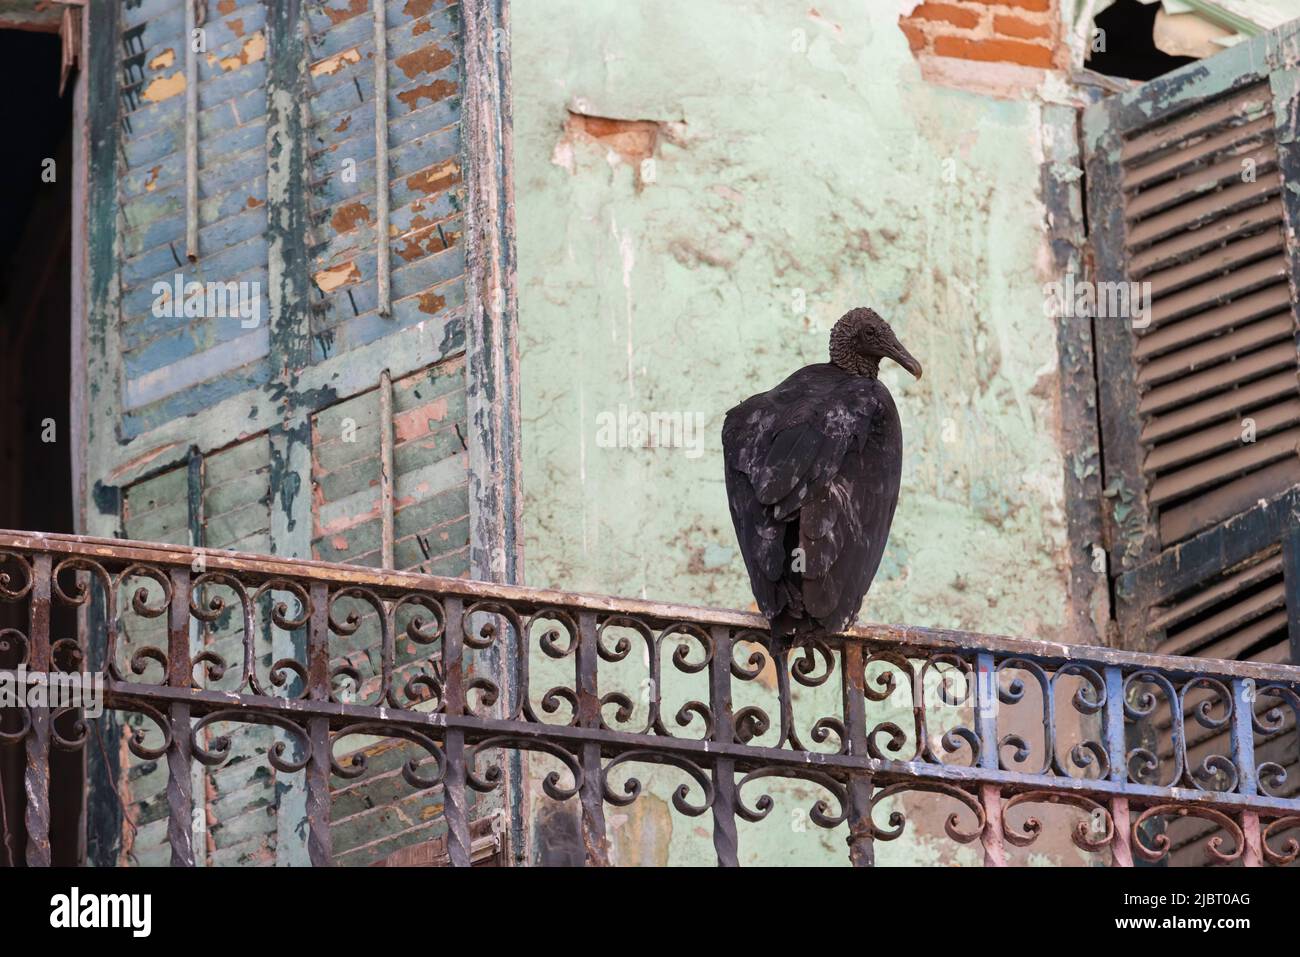 Panama, Città di Panama, avvoltoio nero (Coragyps atratus) che riposa sul balcone di una casa abbandonata nel quartiere storico casco Viejo elencato come Patrimonio Mondiale dell'Umanità dall'UNESCO Foto Stock